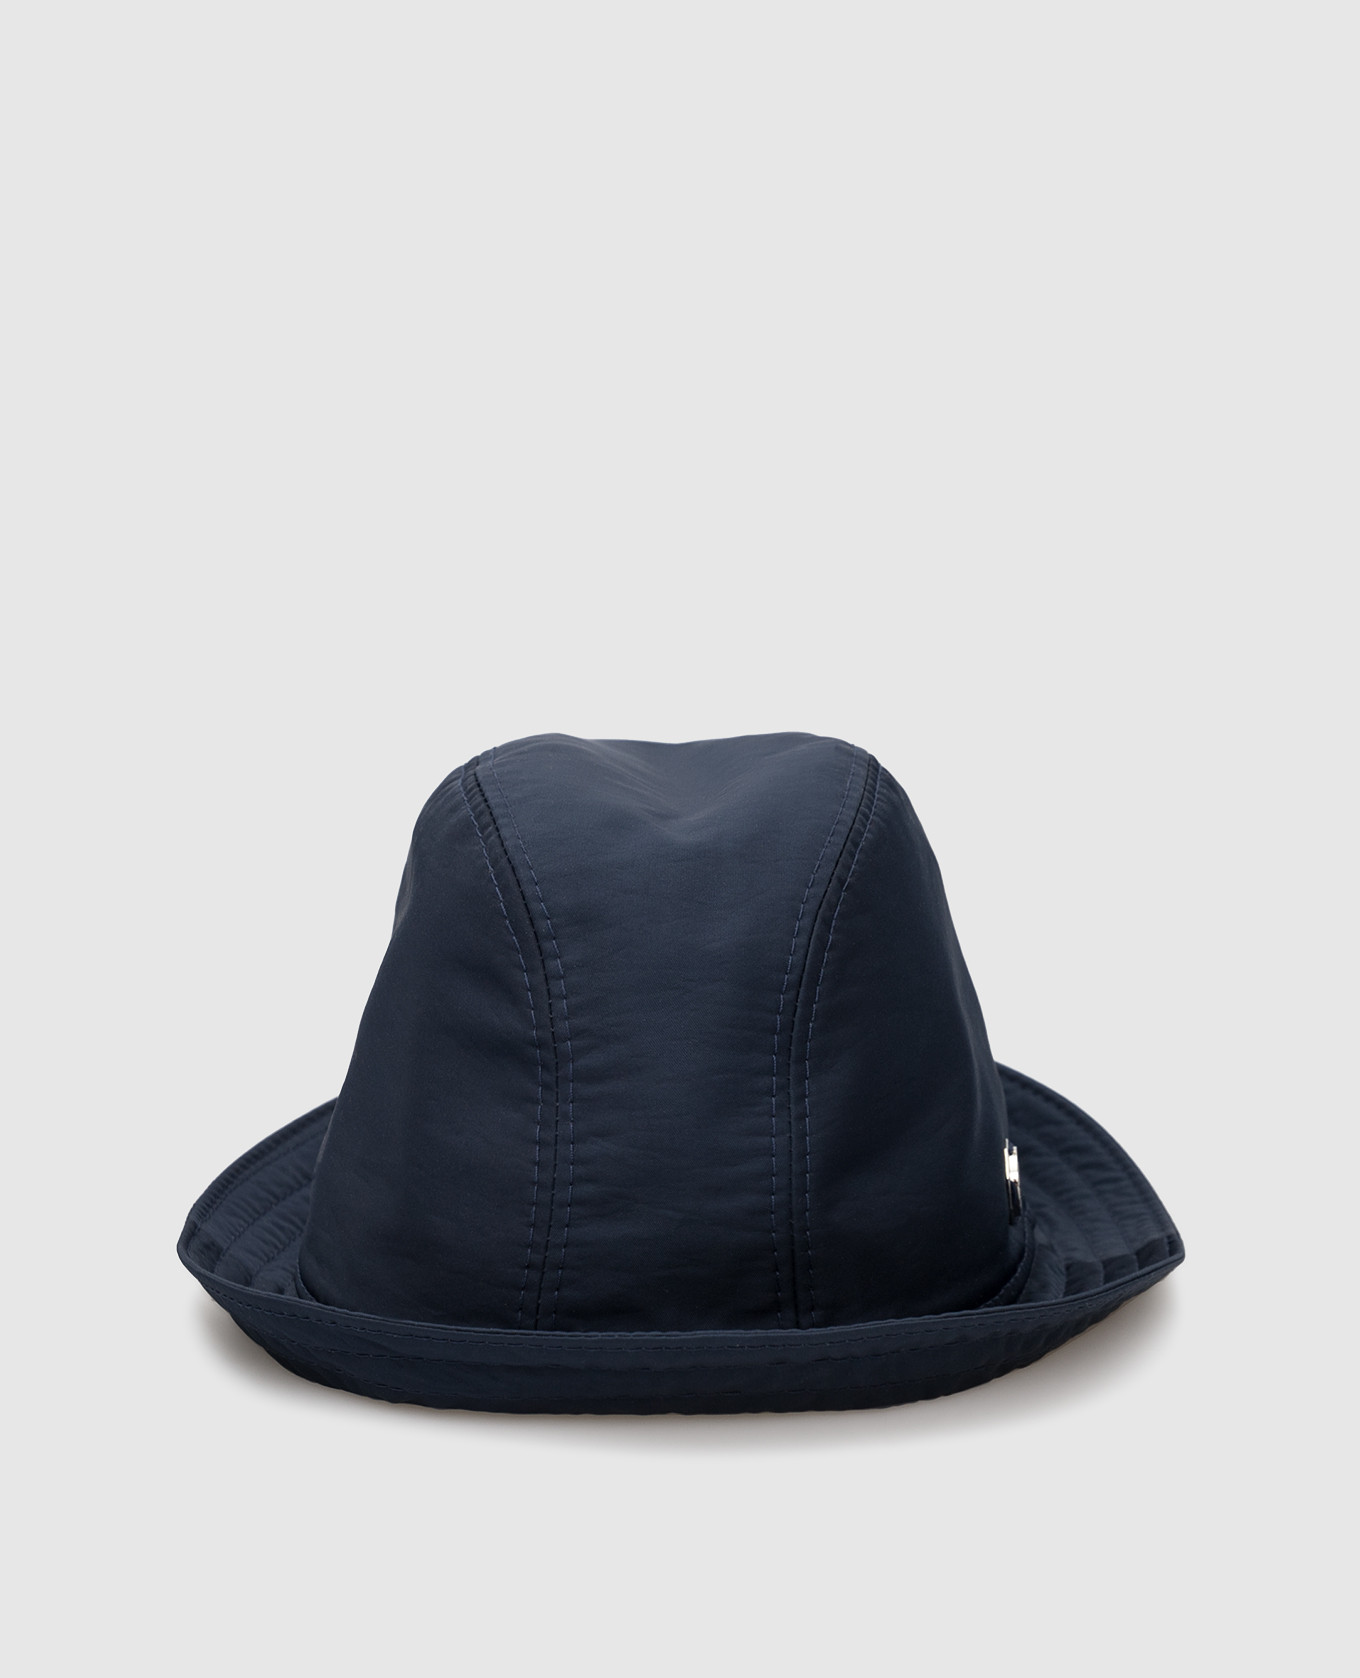 Children's navy blue hat with monogram